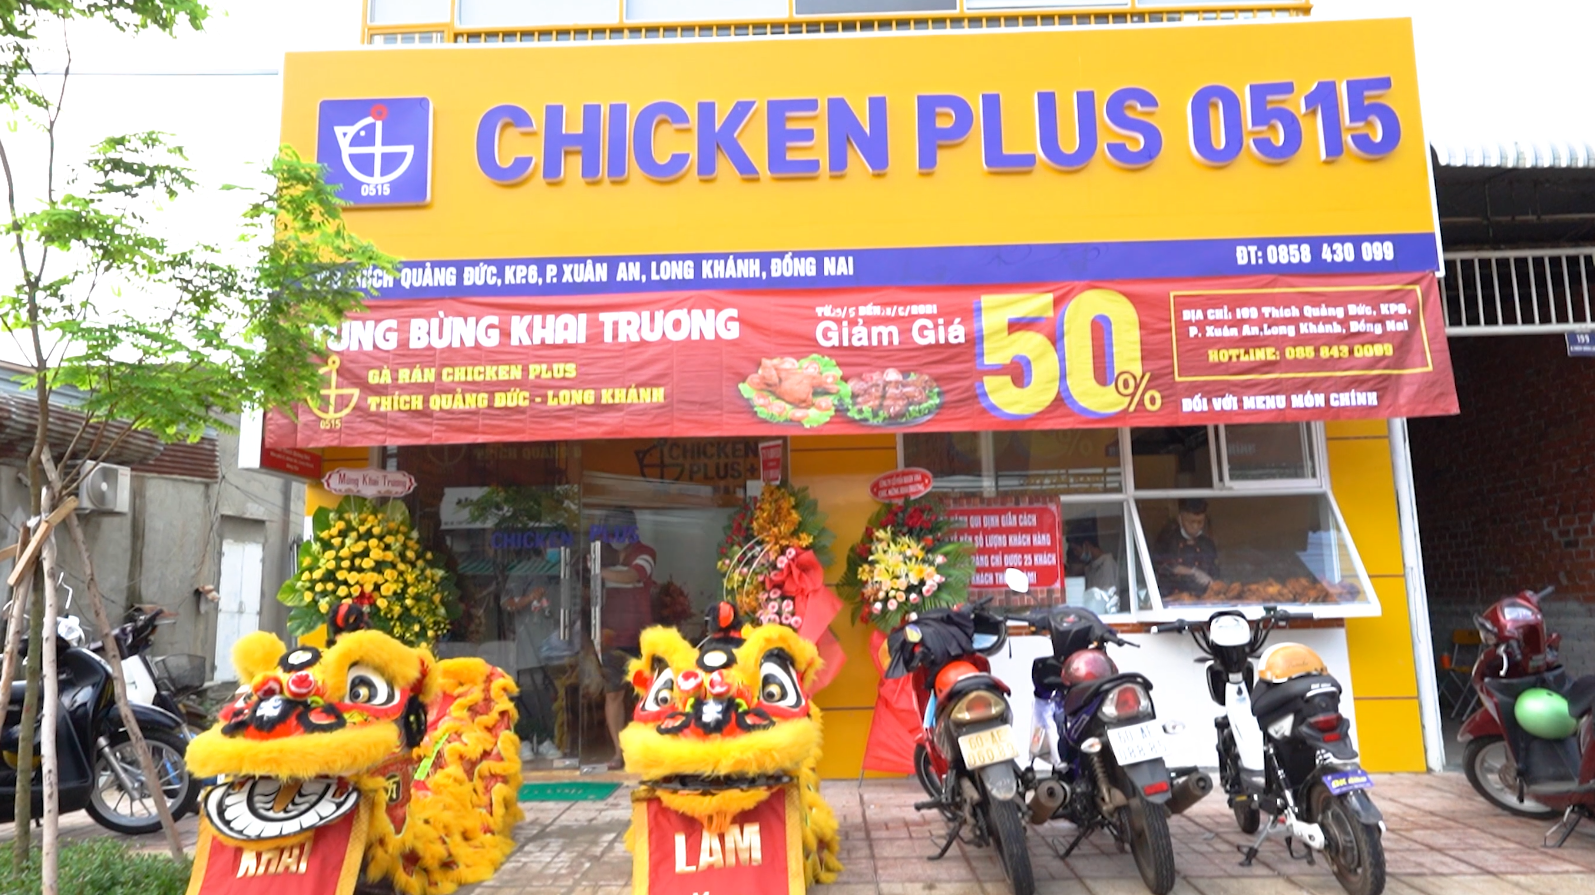 Chicken Plus Thích Quảng Đức (Long Khánh)